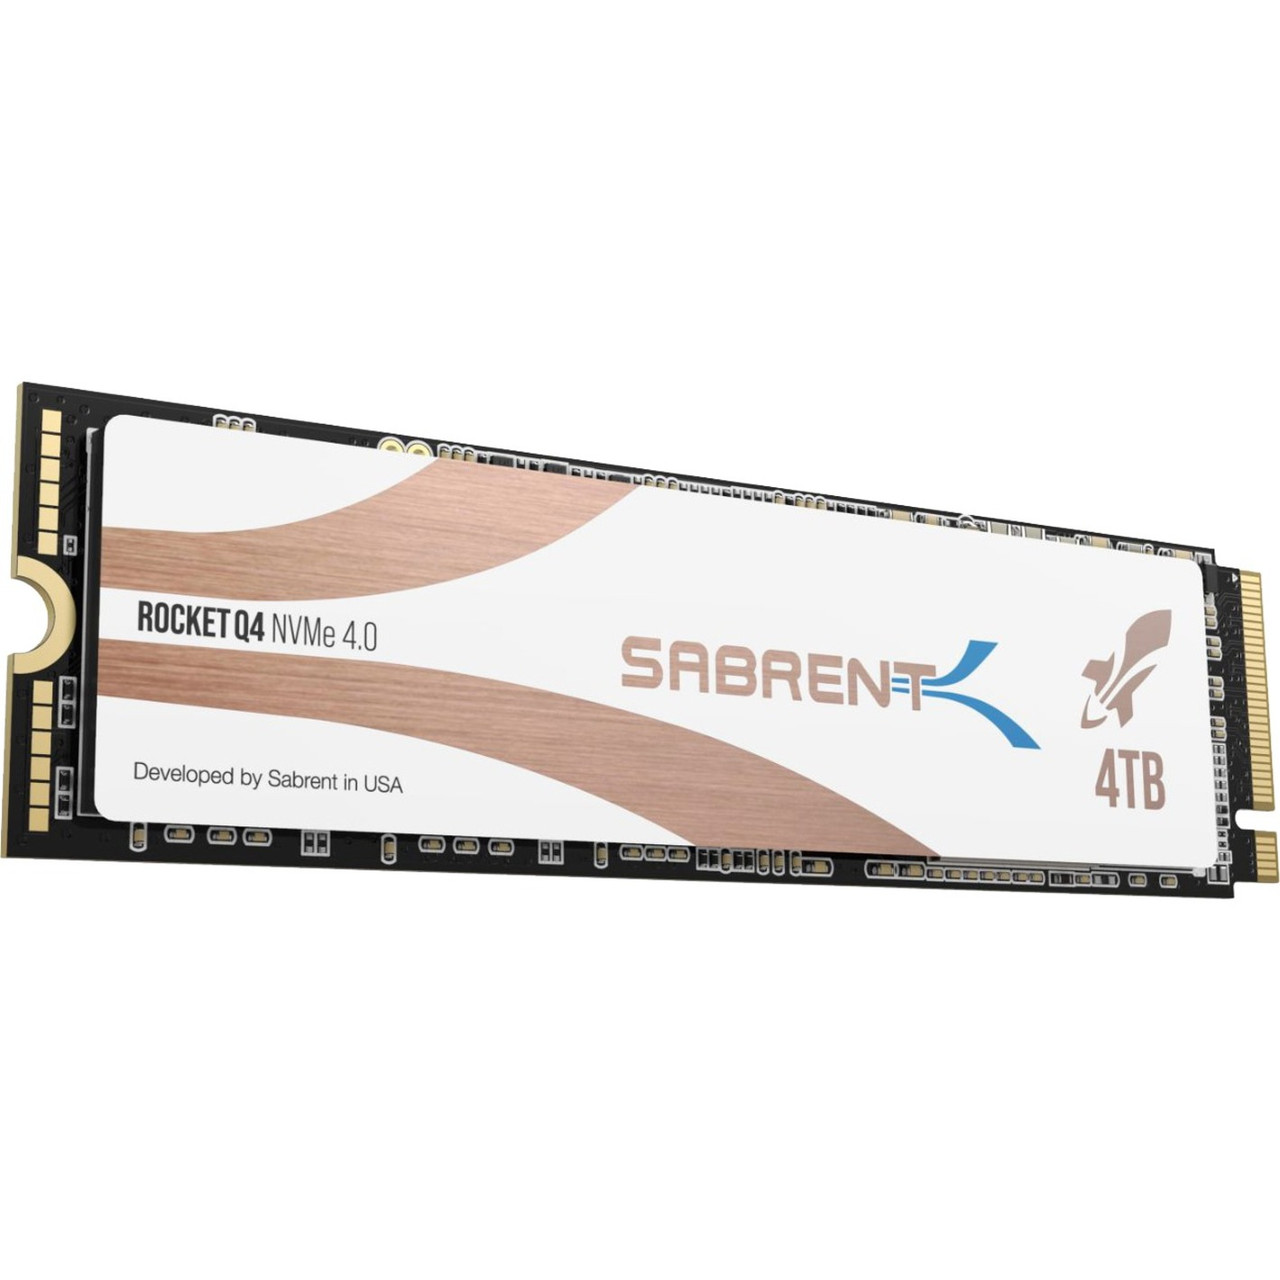 Sabrent Rocket Q4 SB-RKTQ4-4TB 4 TB Solid State Drive - M.2 2280 Internal